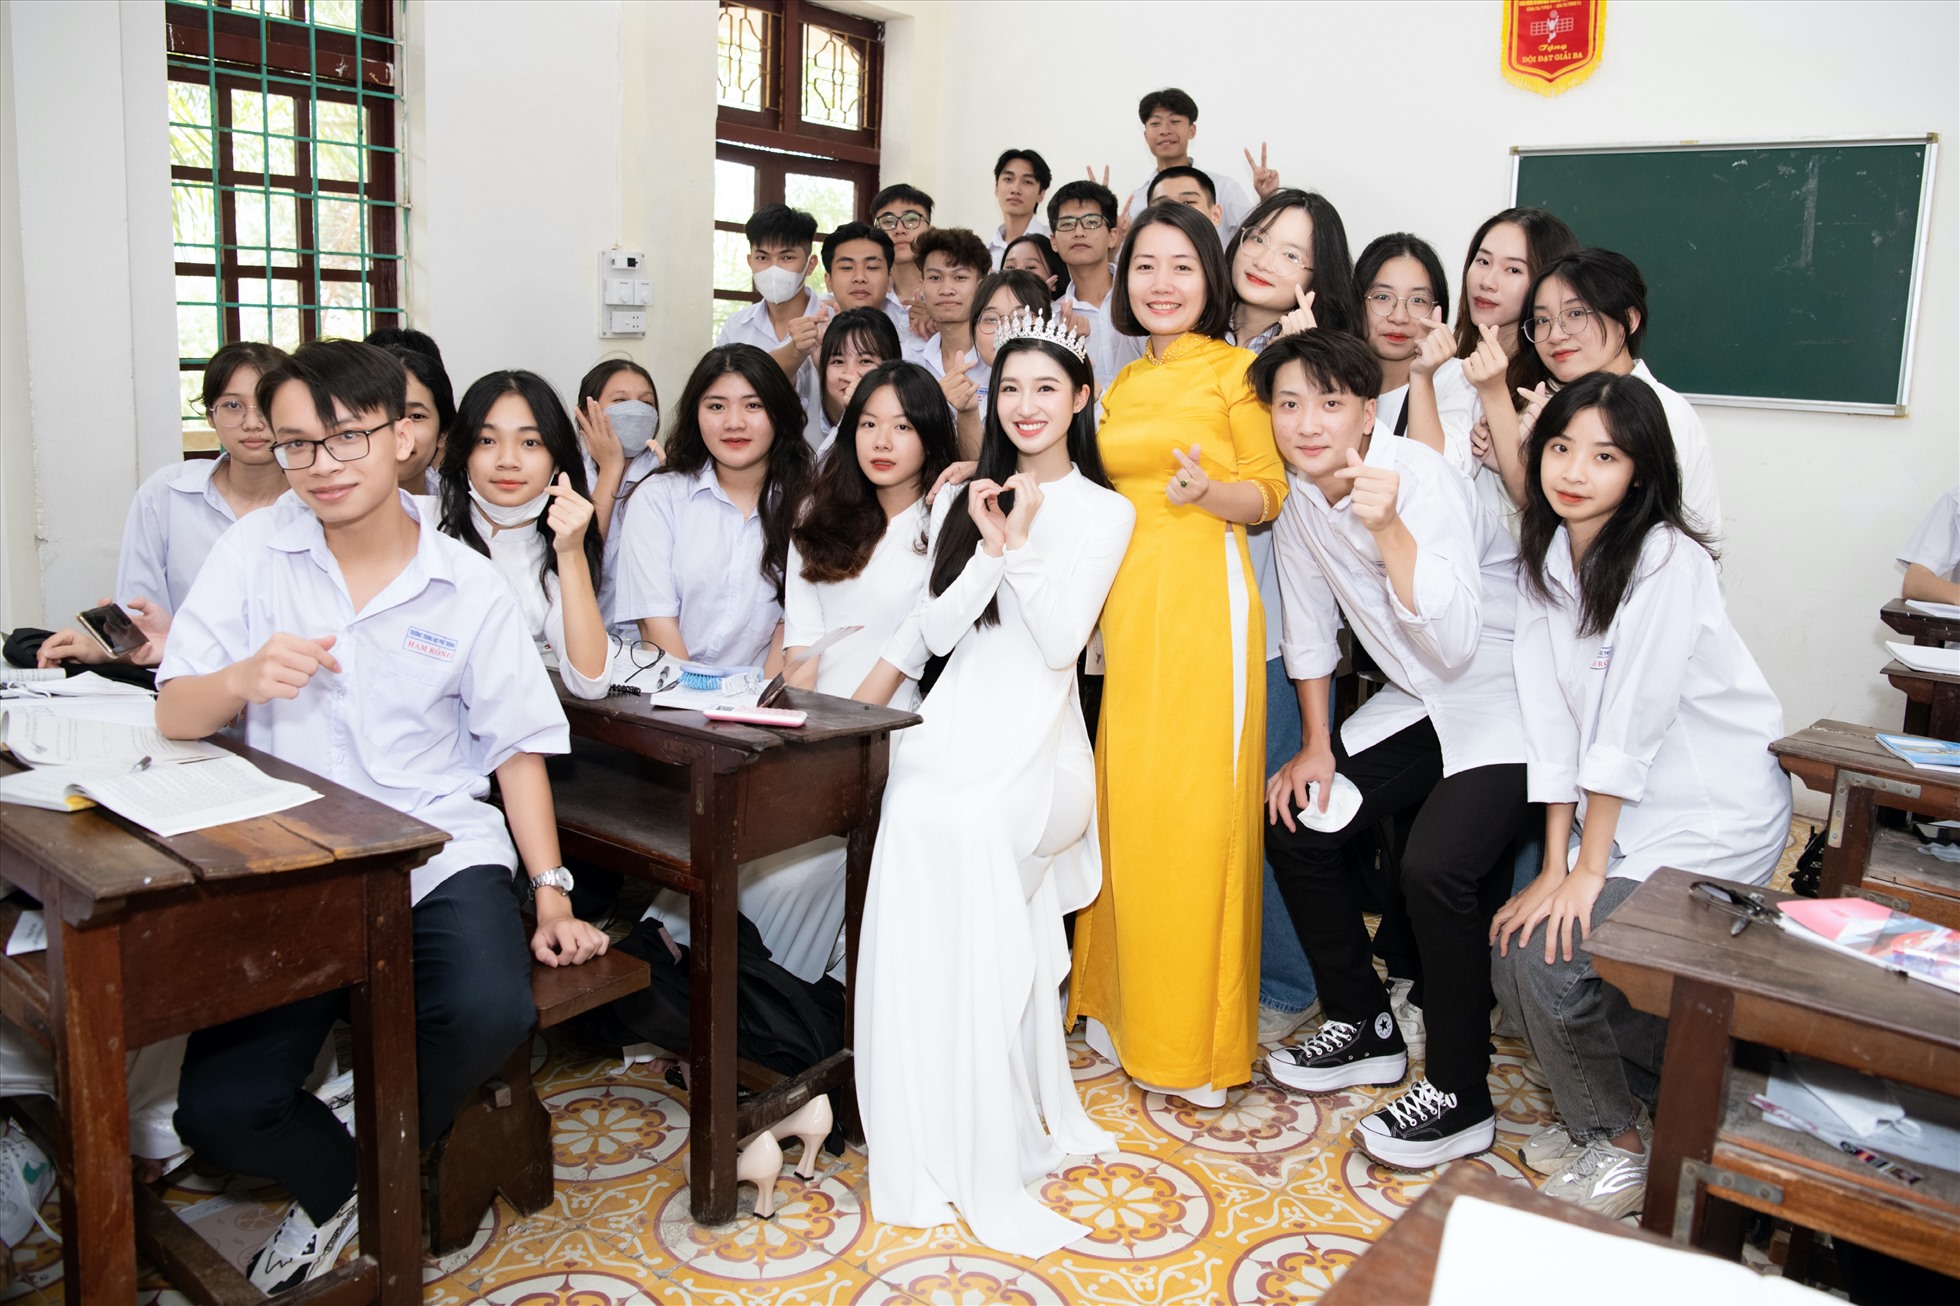 Trong chuyến trở về thăm trường lần này, hình ảnh Á hậu Phương Nhi quây quần trong sự chào đón, yêu mến của các thầy cô, cũng như các em học sinh đã tạo nên những khoảnh khắc gần gũi và đáng quý. Ảnh: NSCC.